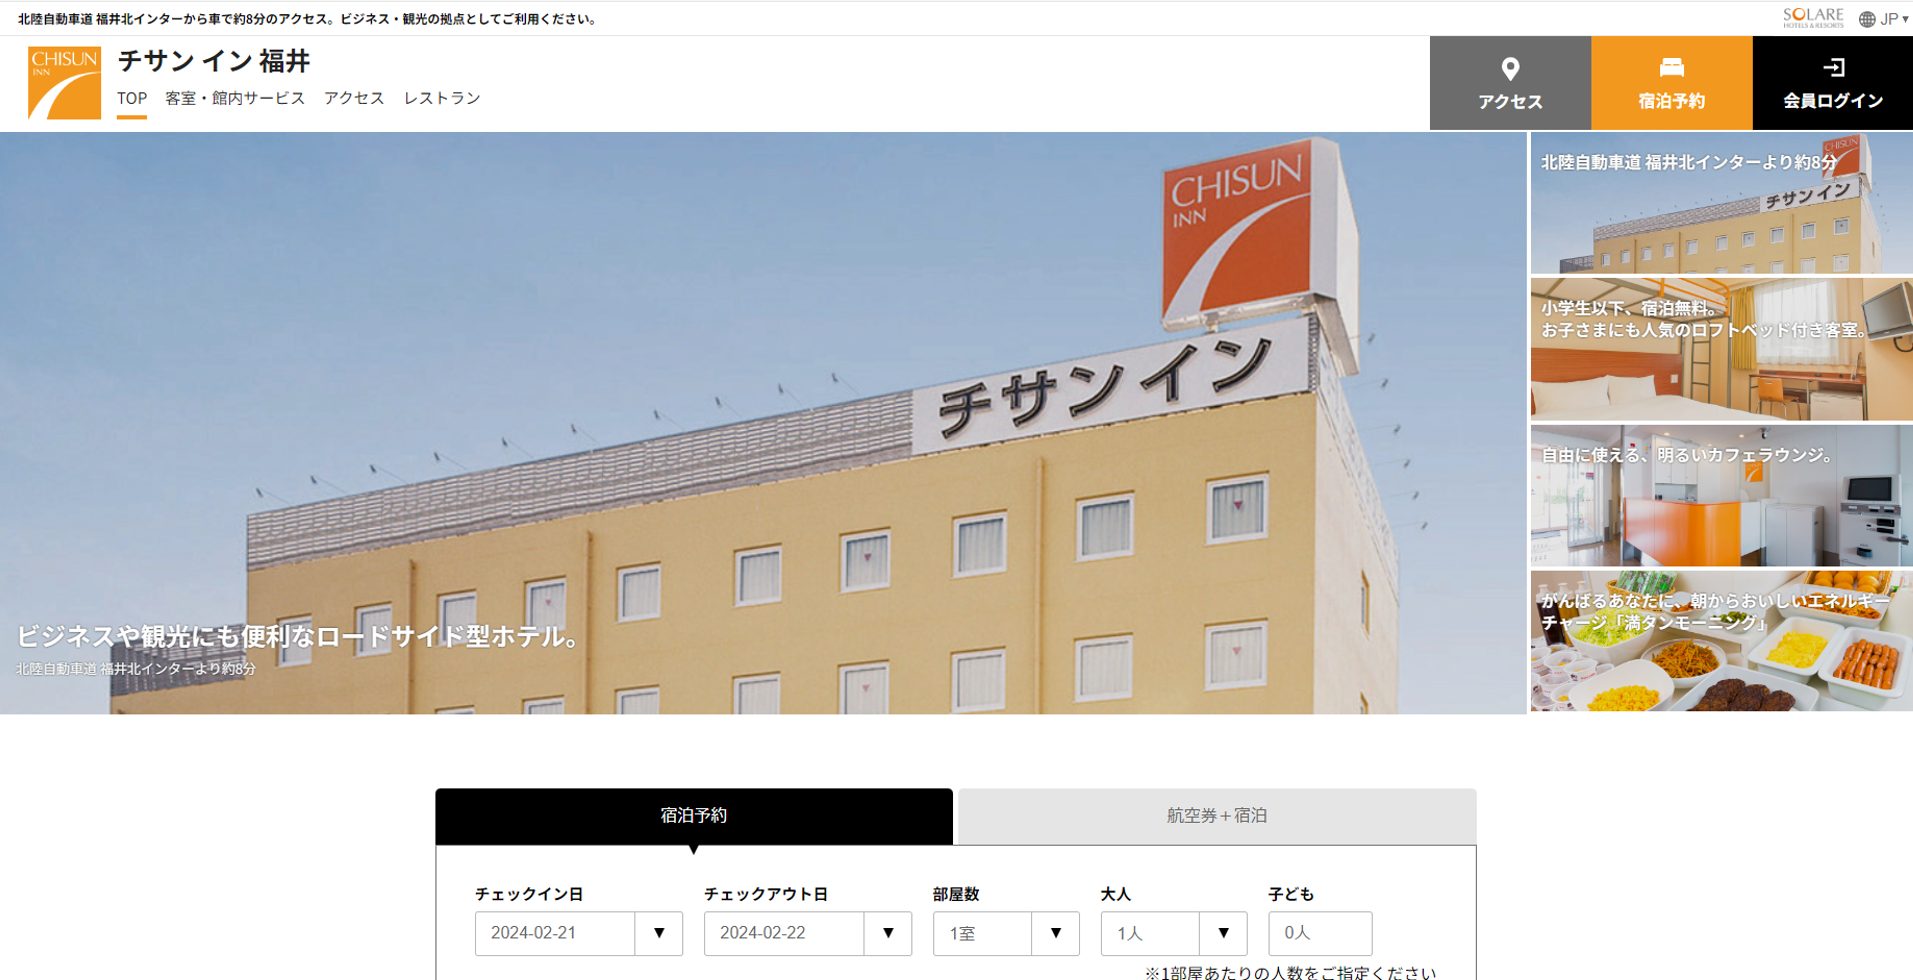 福井市のホテル「チサン イン福井」、2024年8月にリニューアルして「コンフォートイン福井」へ／運営会社が交代